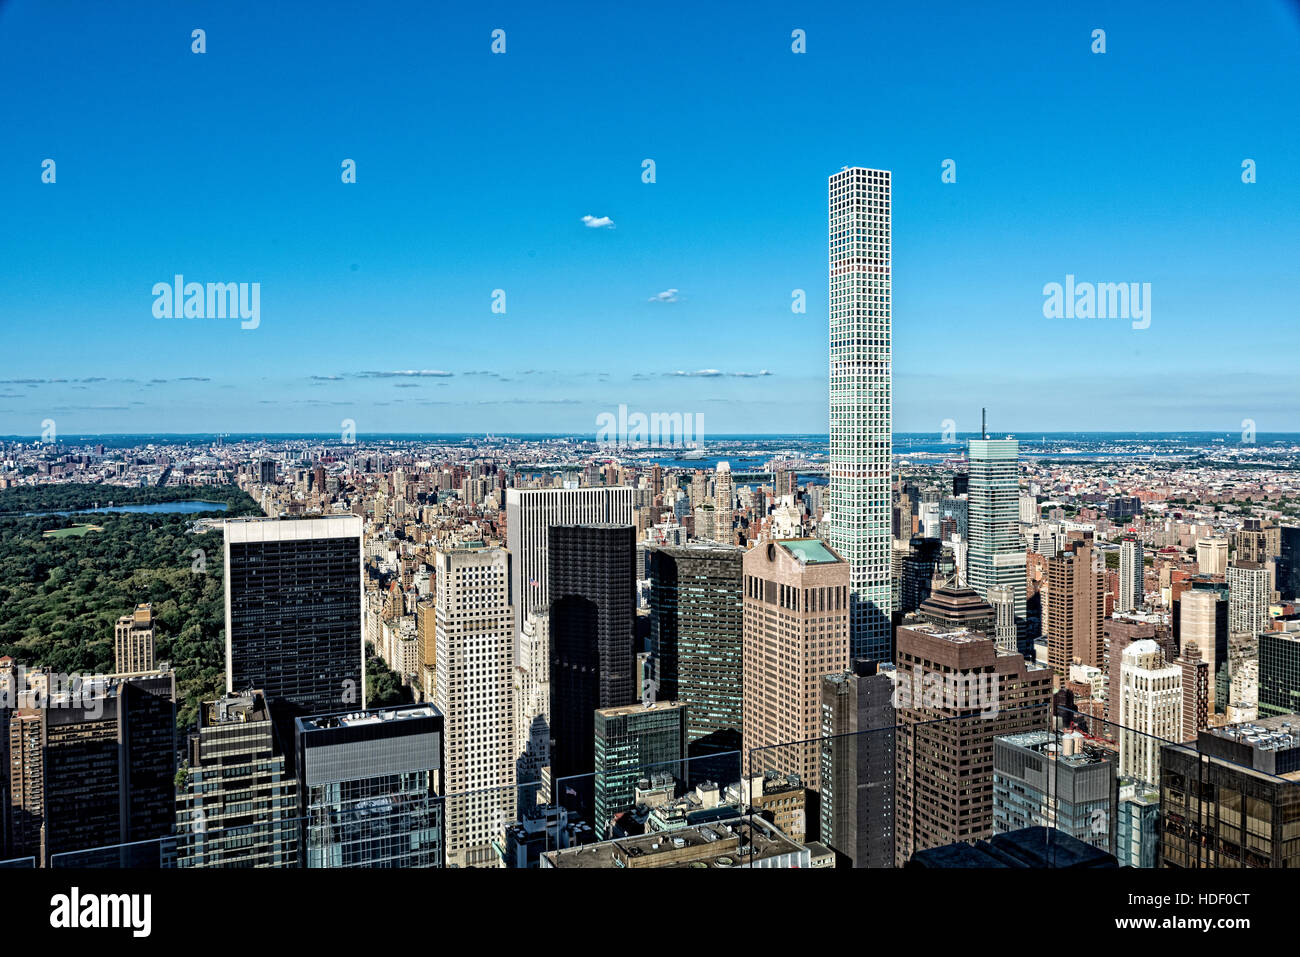 À Au nord-est de Manhattan, New York. Le bâtiment le plus haut, dominant les autres, est un nouveau bâtiment résidentiel Park Avenue c'est la t Banque D'Images